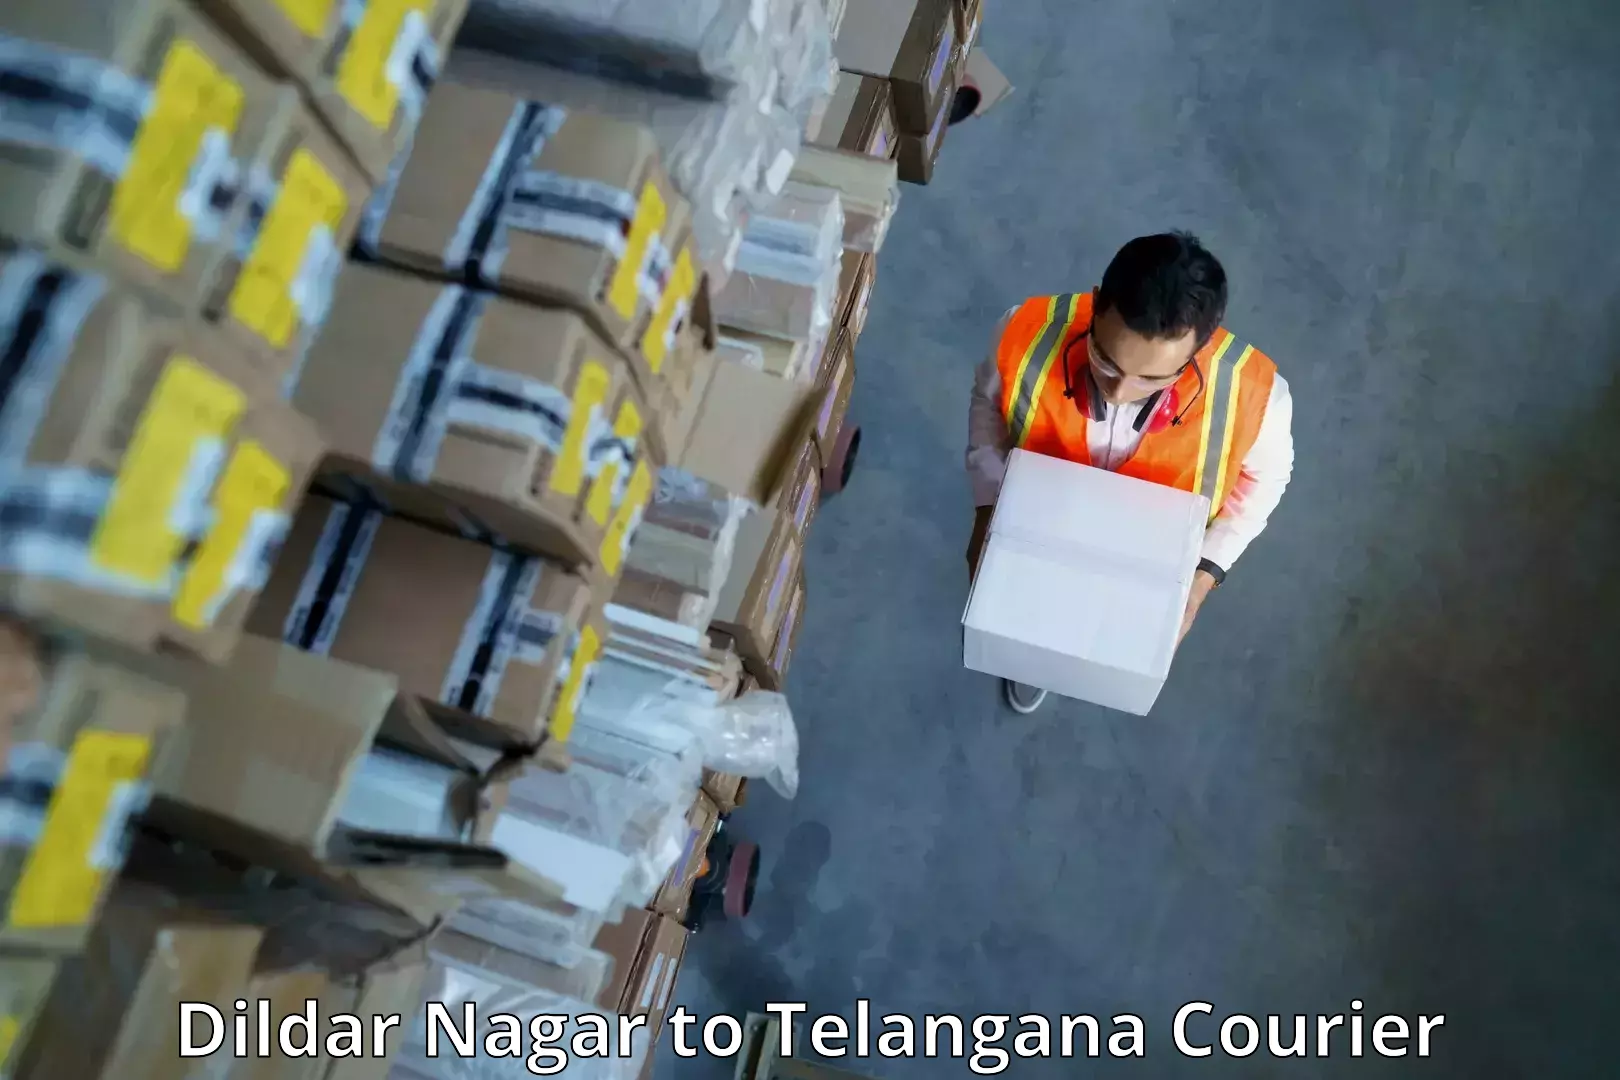 Speedy delivery service Dildar Nagar to Wanaparthy